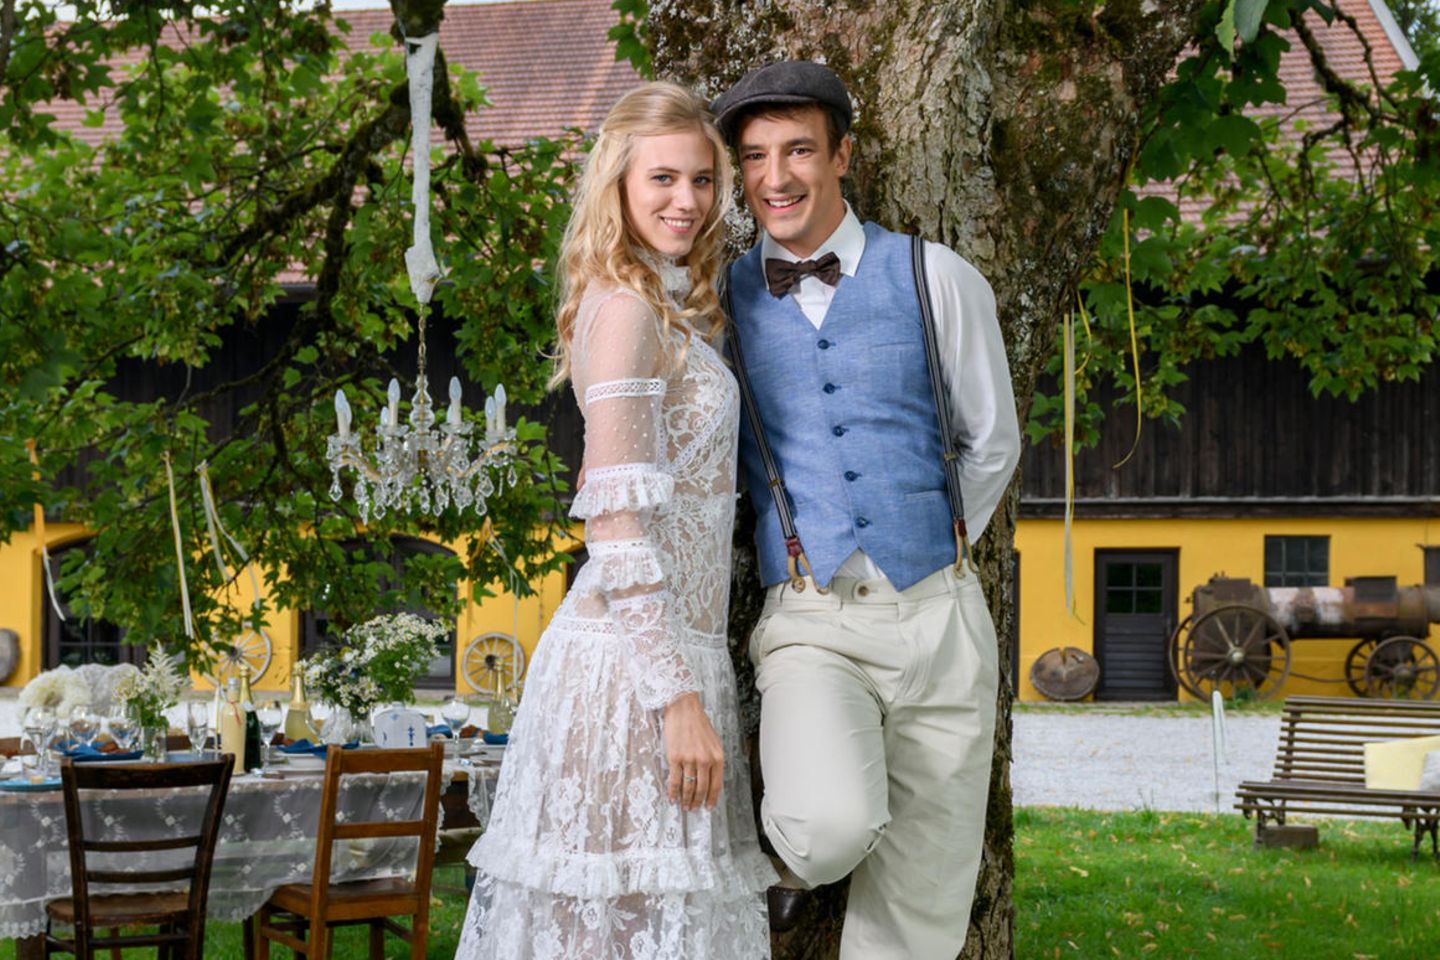 Happyend am Fürstenhof! Alicia Lindbergh (Larissa Marolt) und Viktor Saalfeld (Sebastian Fischer) feiern nach allerlei (Liebes-)Irrungen und Wirrungen endlich Traumhochzeit.